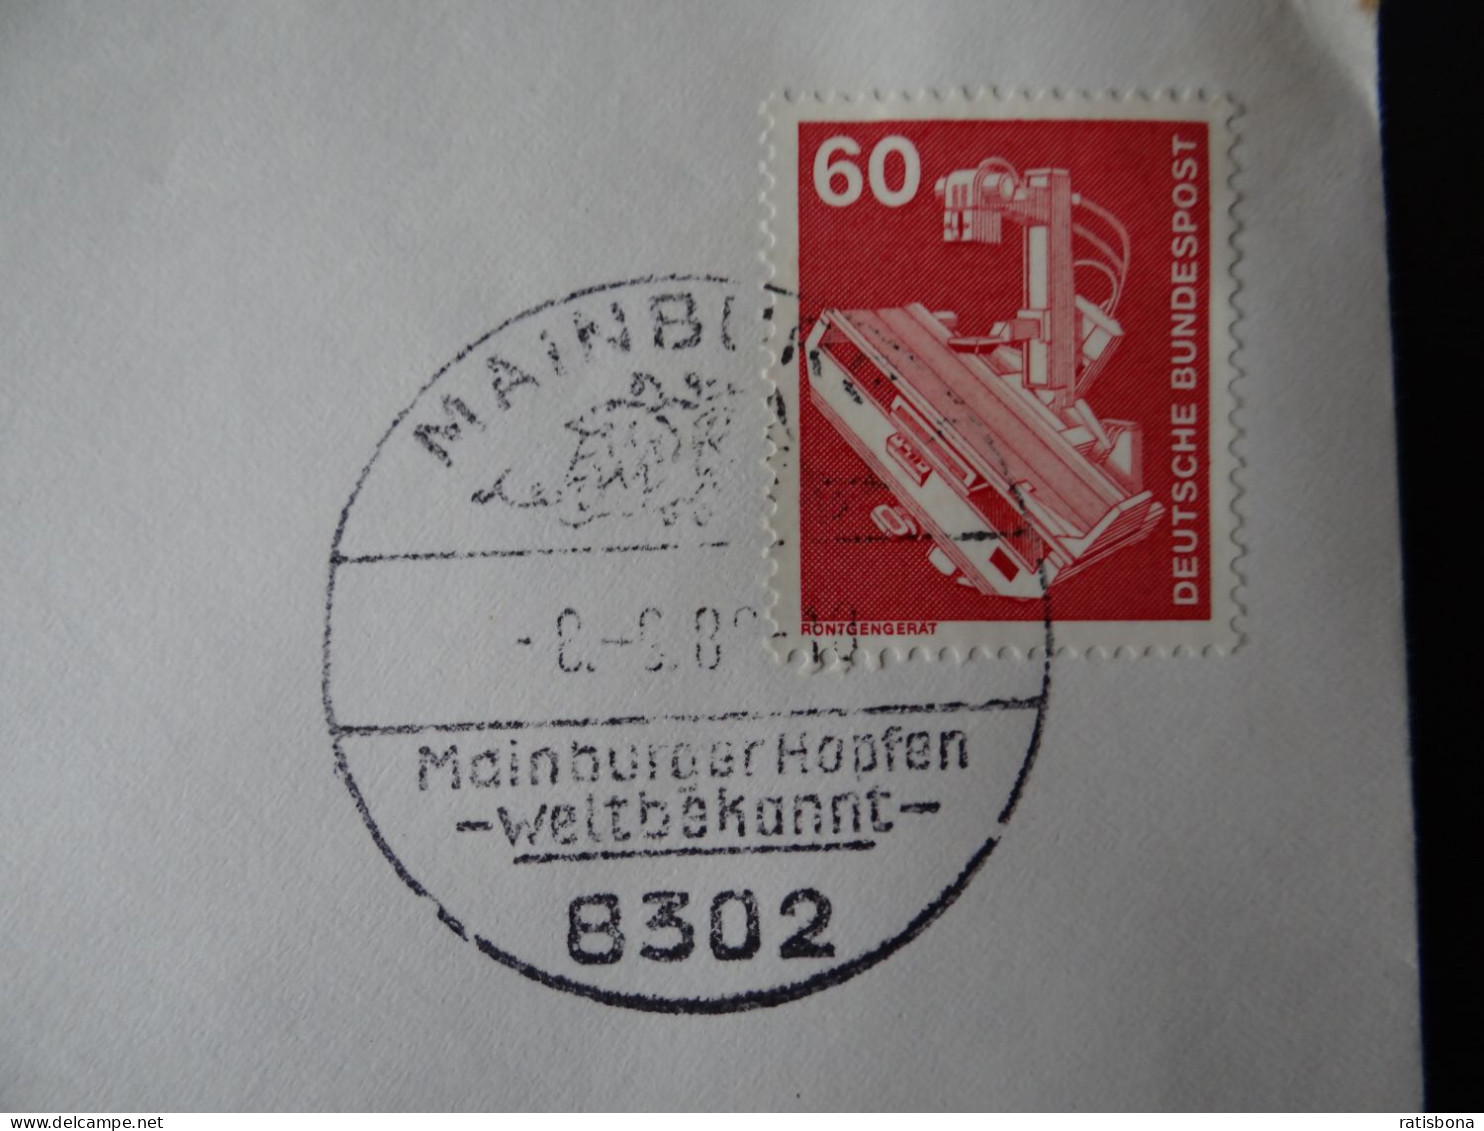 8302 Mainburg - MainburgerHopfen Weltbekannt - Sonderstempel Rund 1980 - Máquinas Franqueo (EMA)